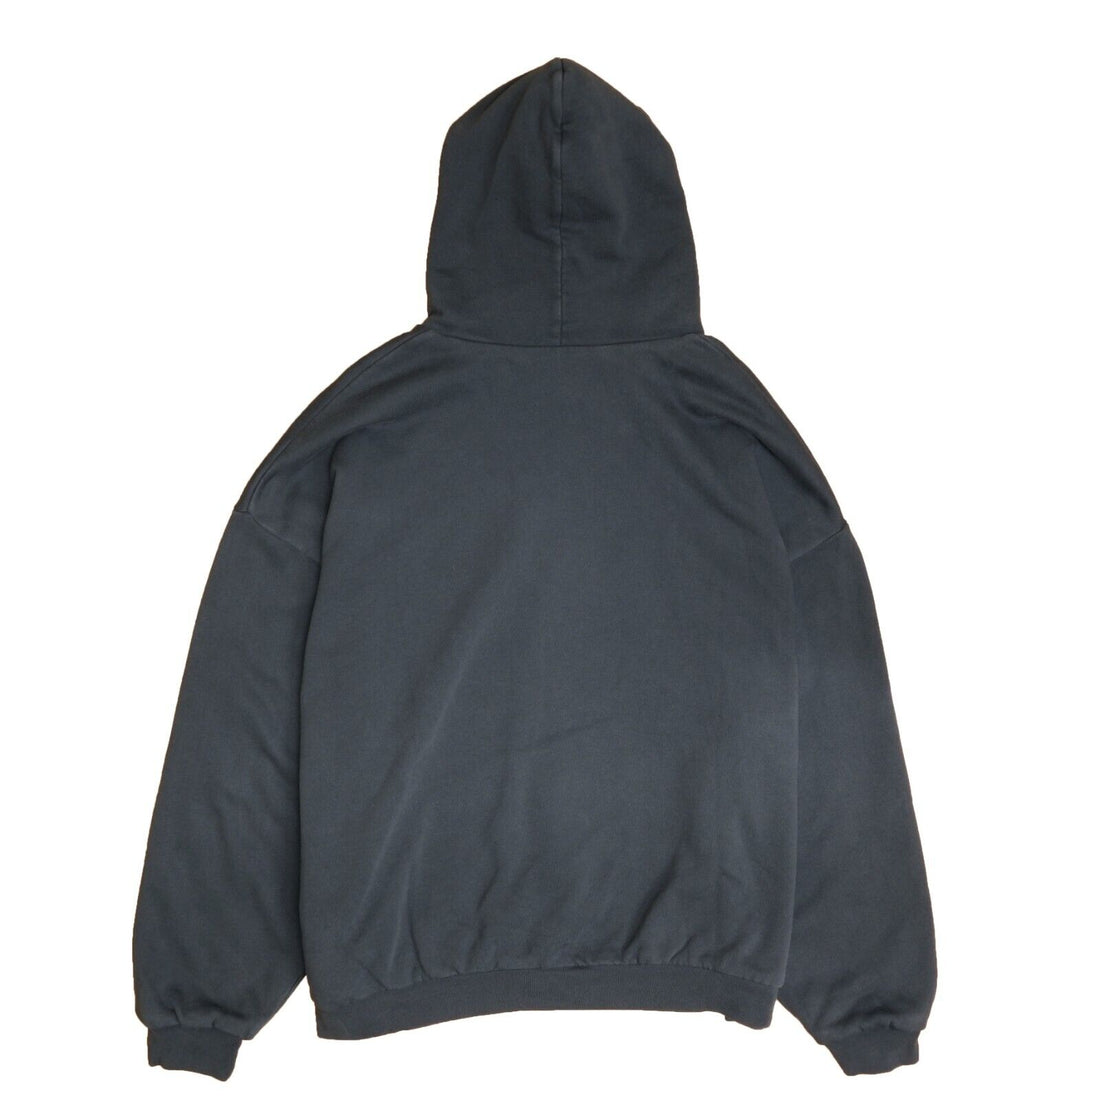 Yeezy Gap Unreleased Pullover Sweatshirt Hoodie Size Medium Black